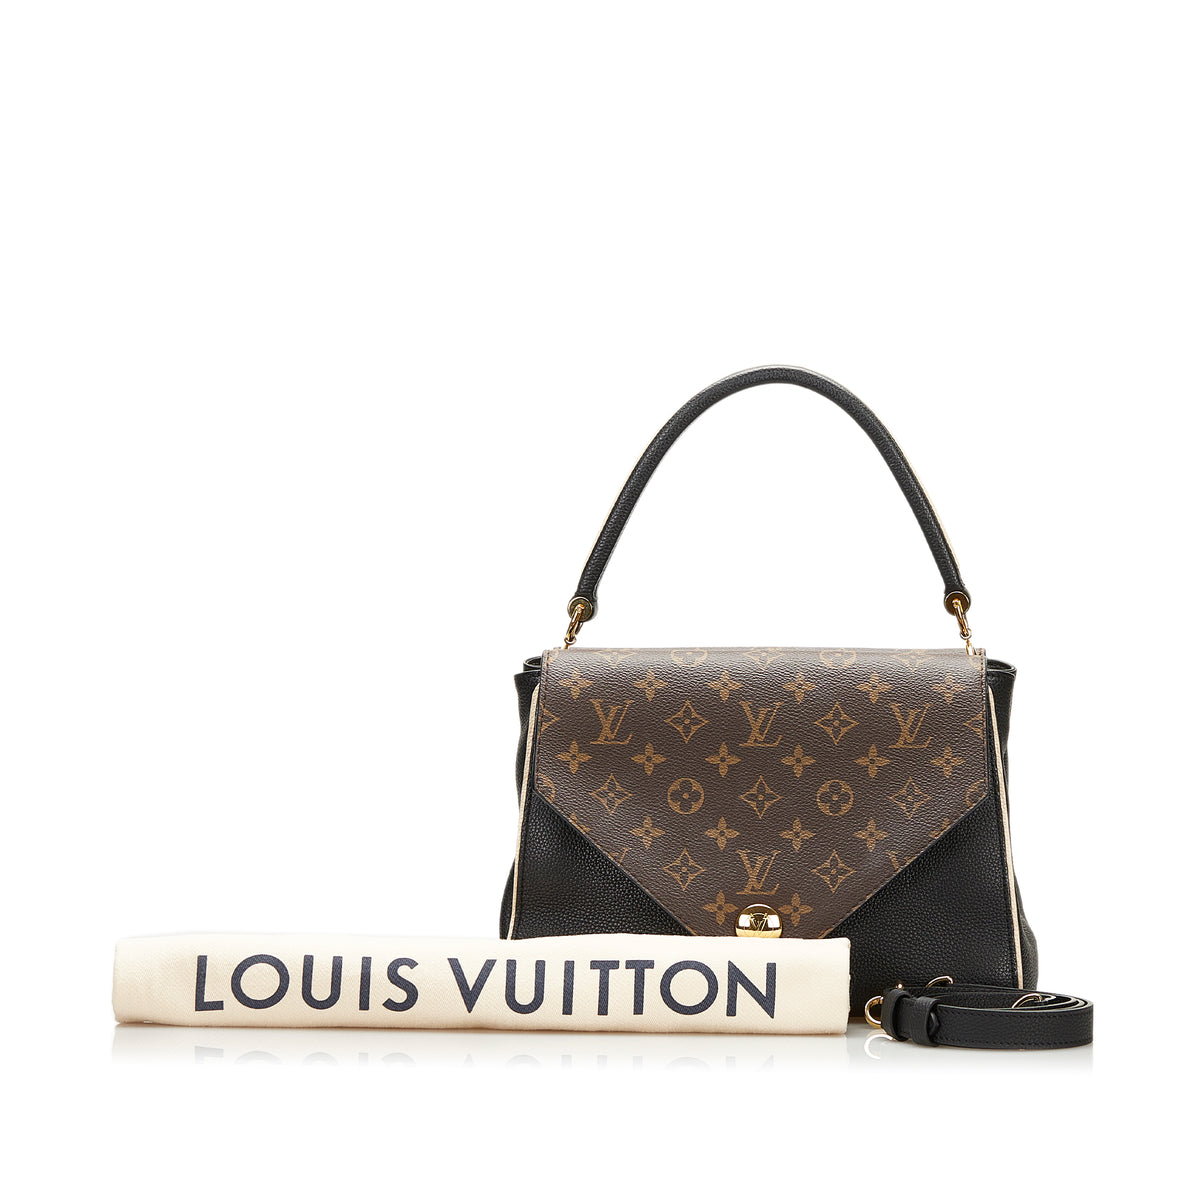 PRELOVED Louis Vuitton Monogram Double V Satchel Shoulder Bag TR2127 060623  - $200 OFF